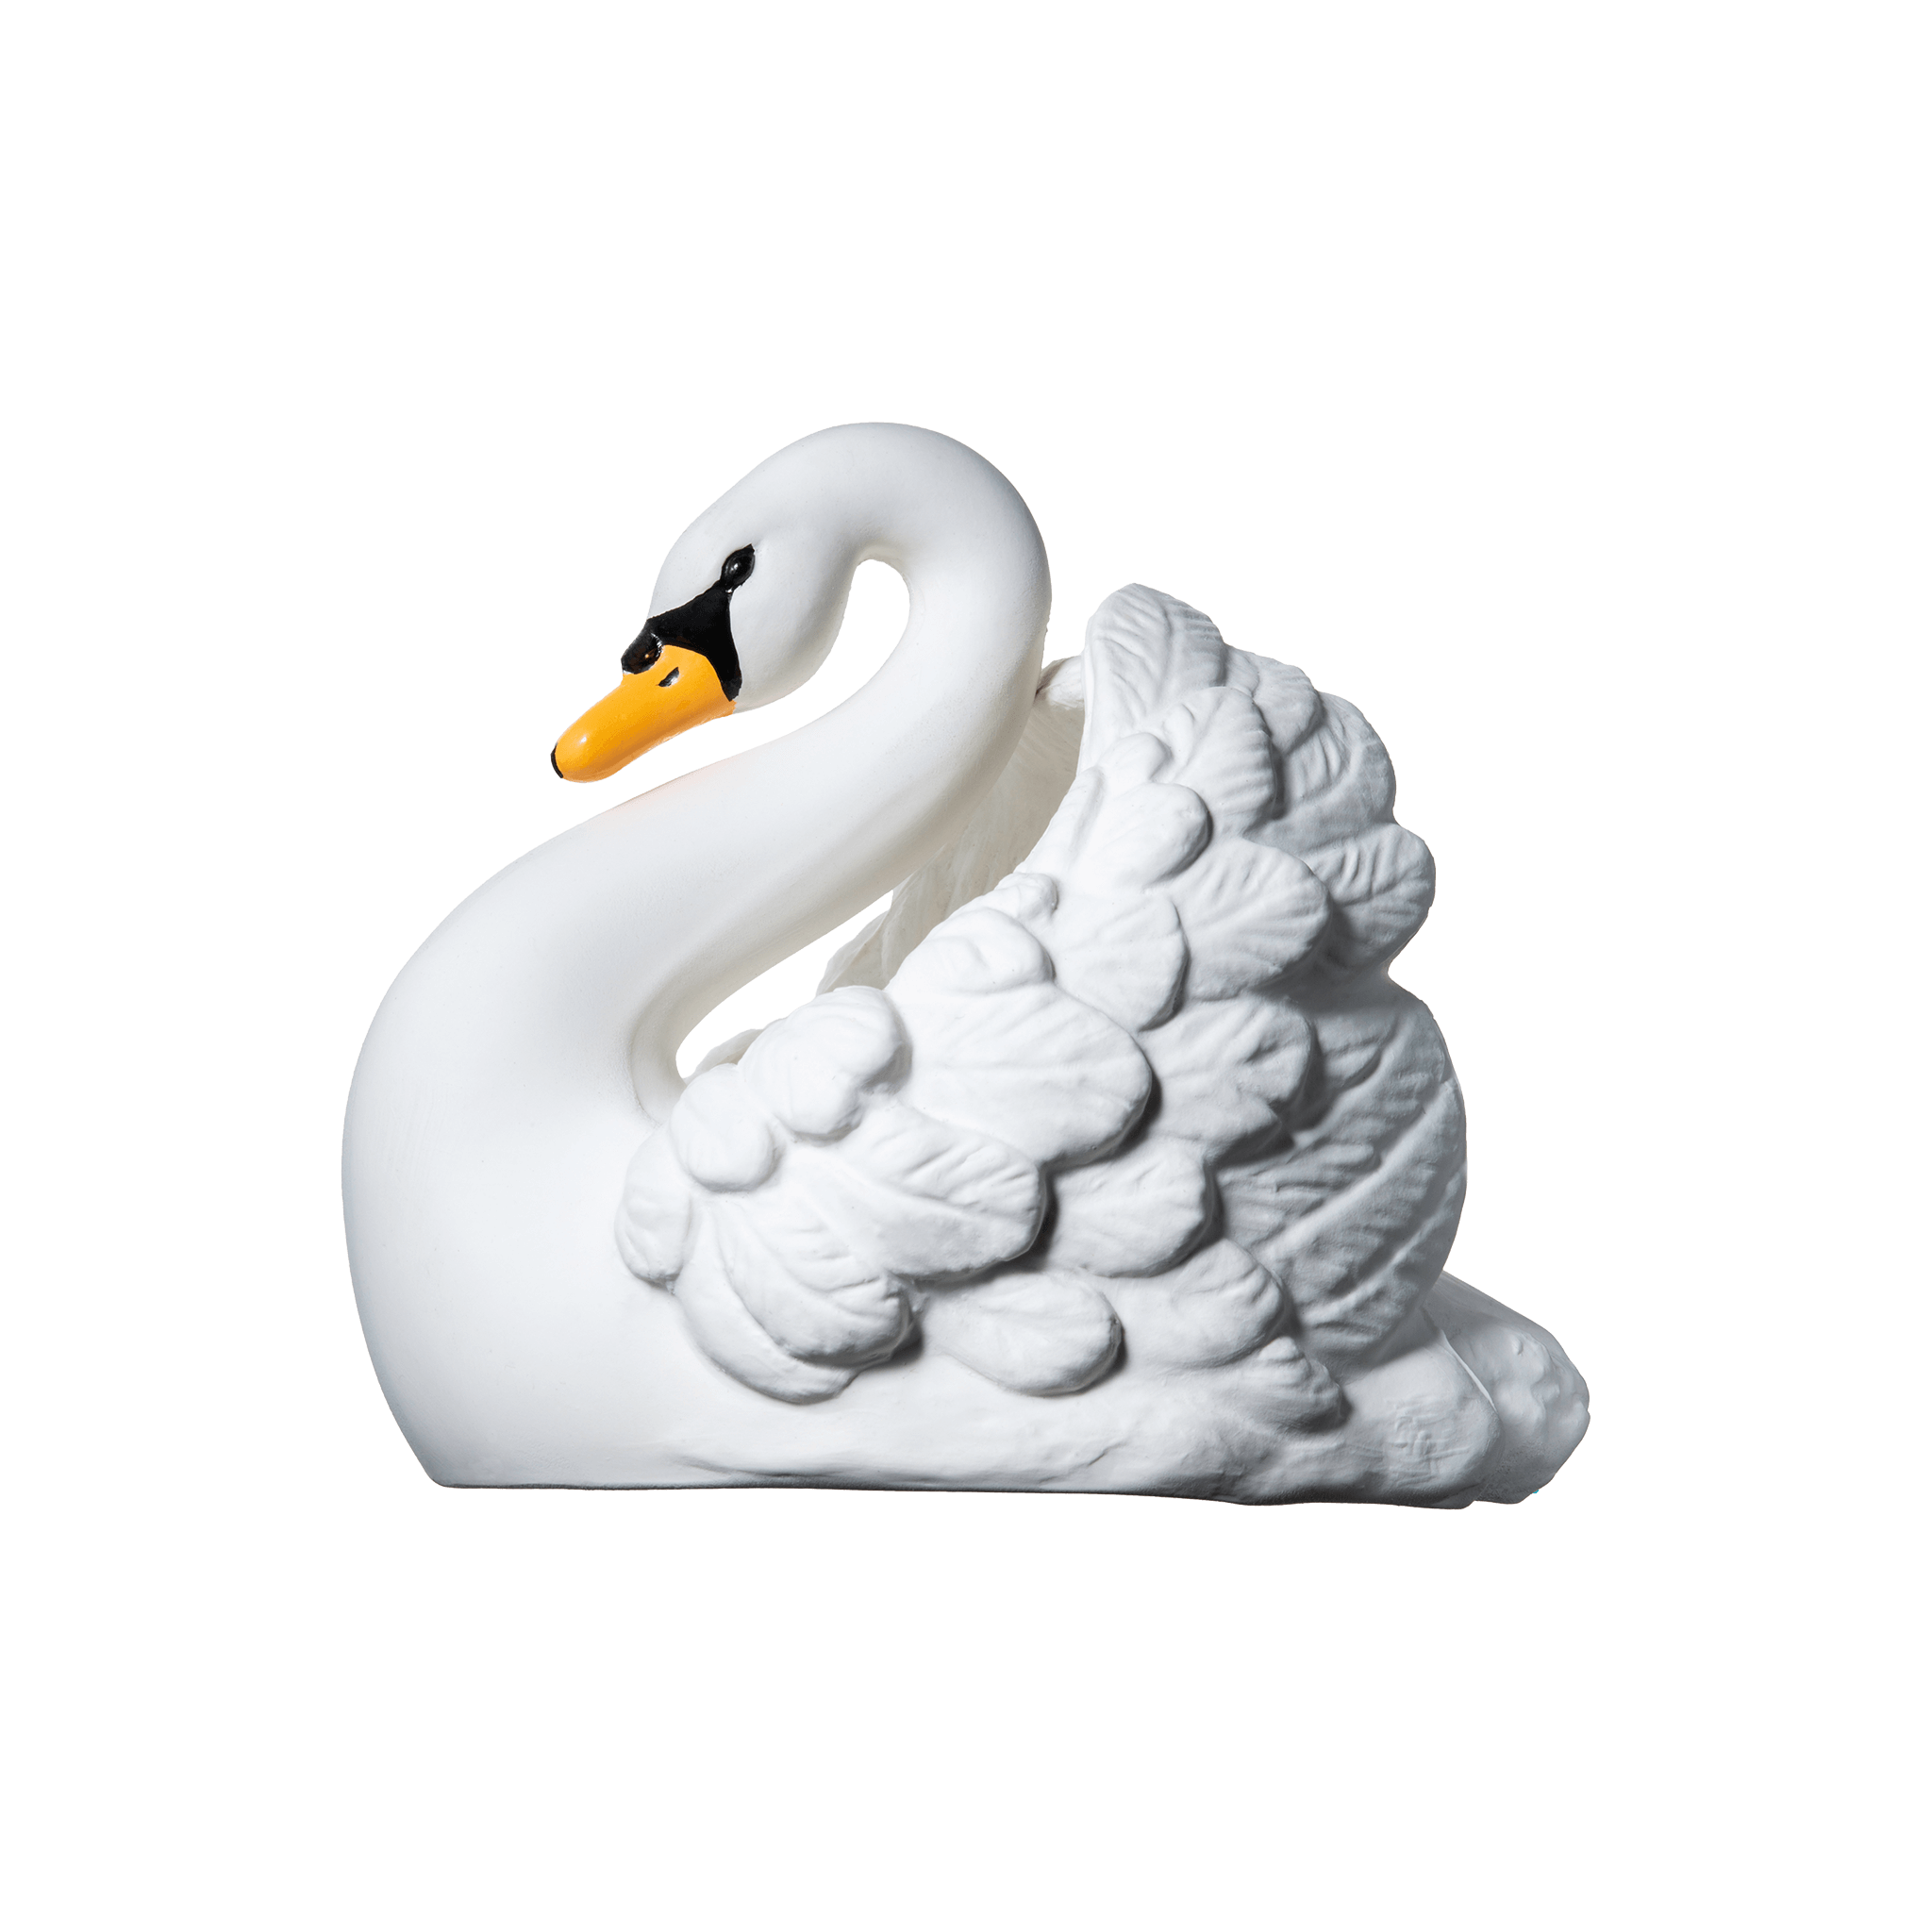 Swan bath toy